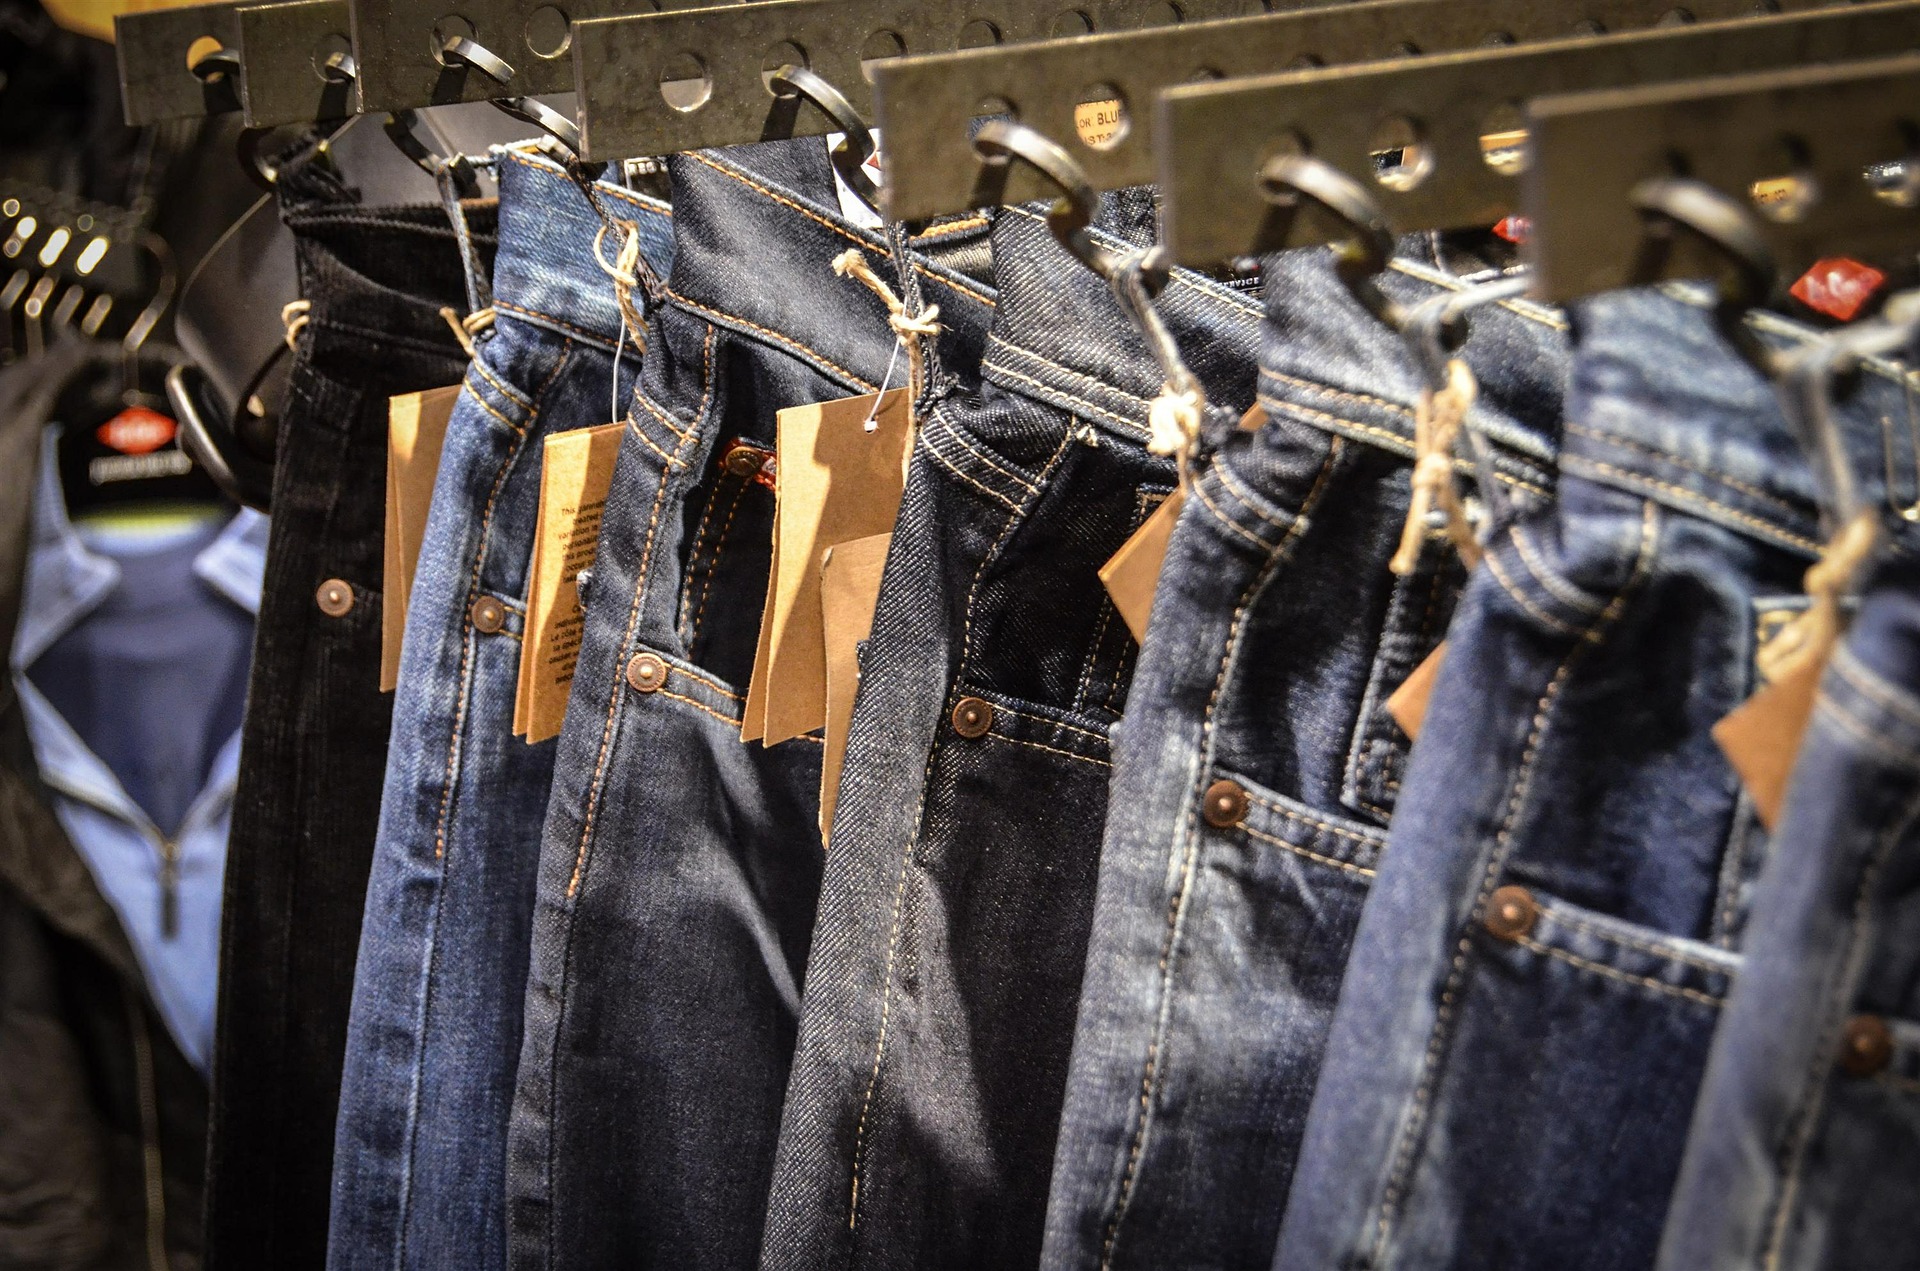 Hosenarten für Männer Jeans am Bügel